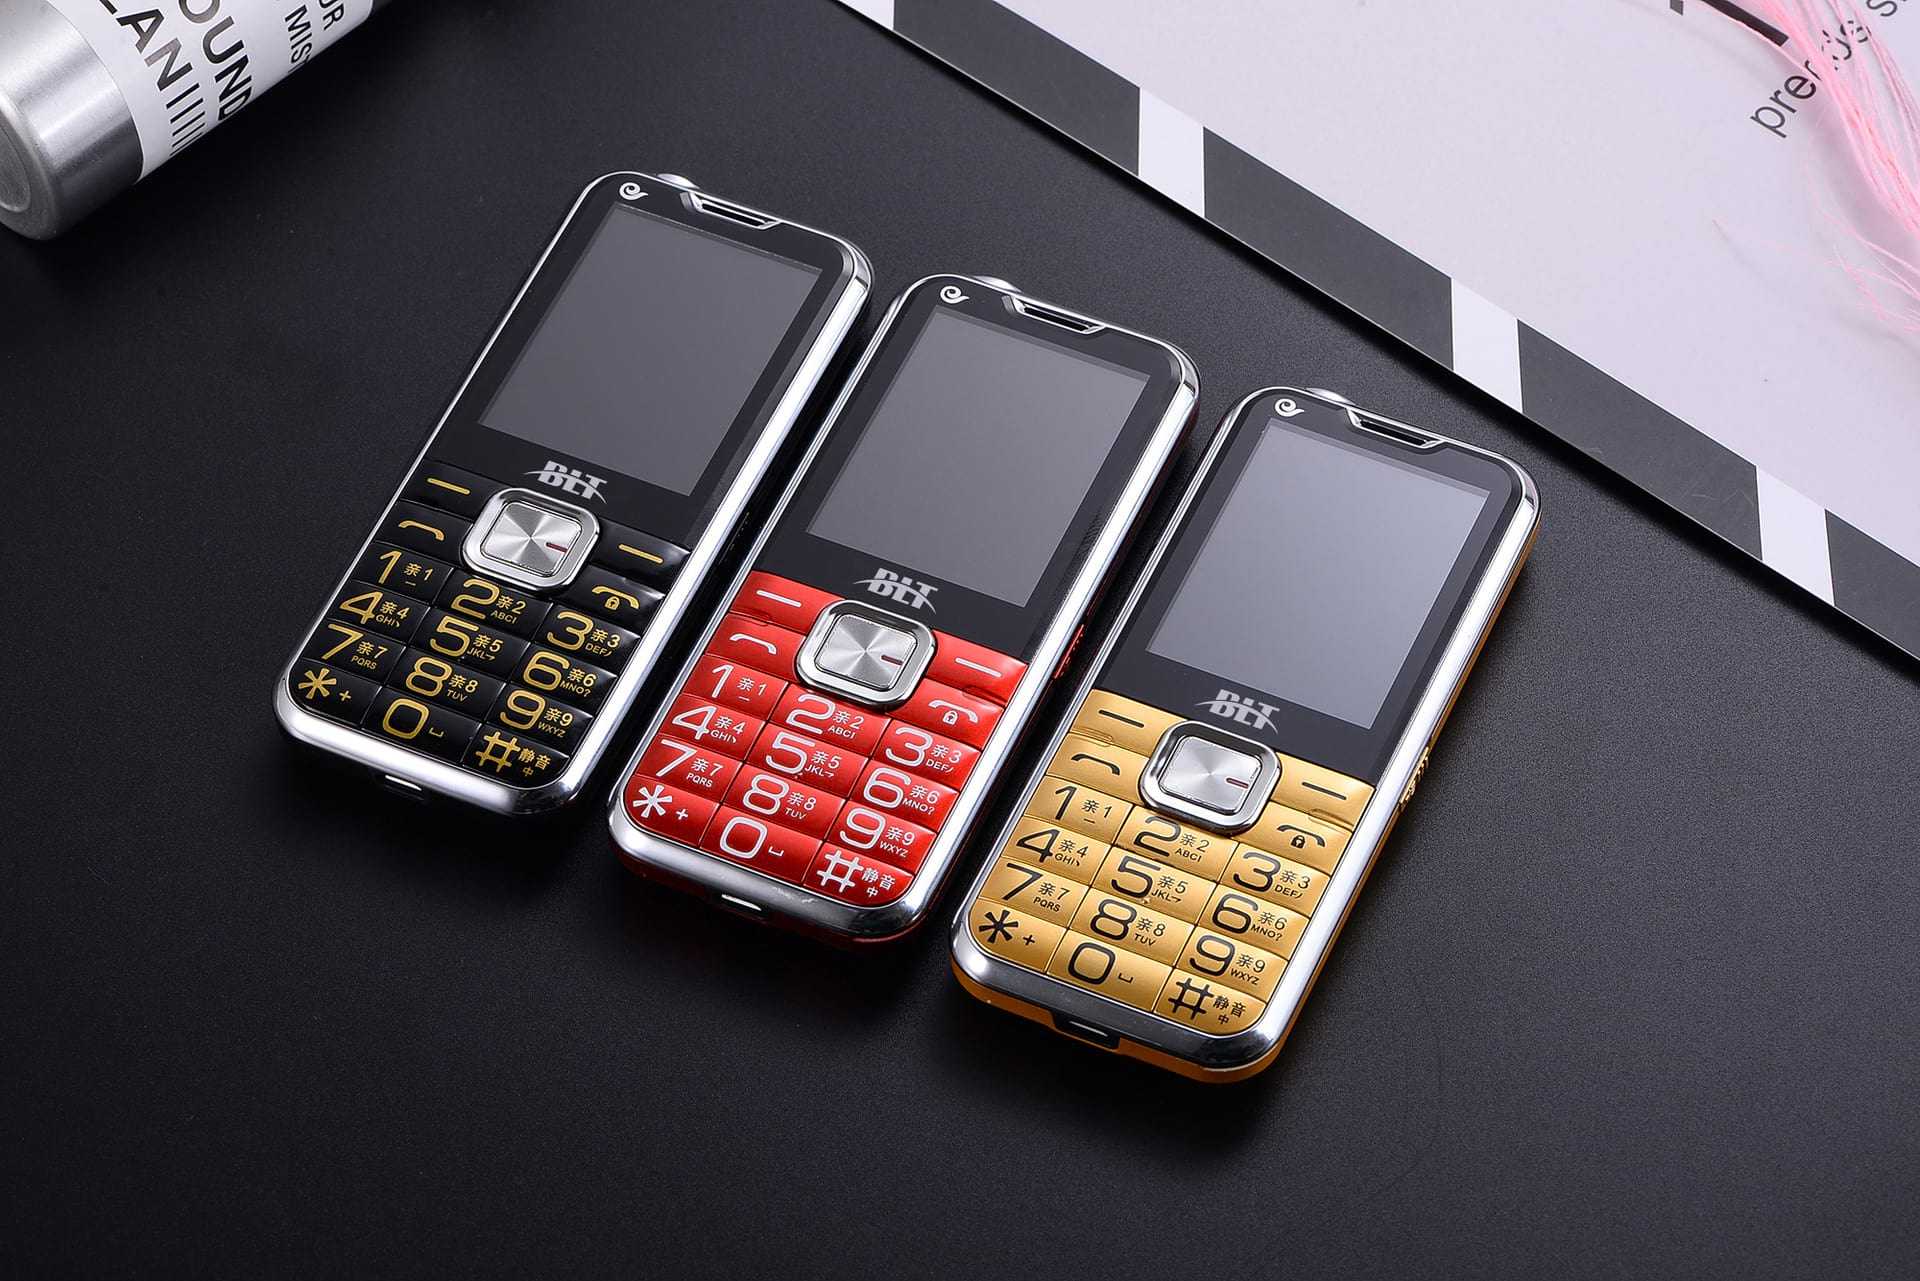 Топ-10 лучших моделей кнопочных телефонов для детей, пожилых людей и для рабочих нужд Nokia 8110 4G и другие стильные, качественные и популярные кнопочные телефоны 2022 года